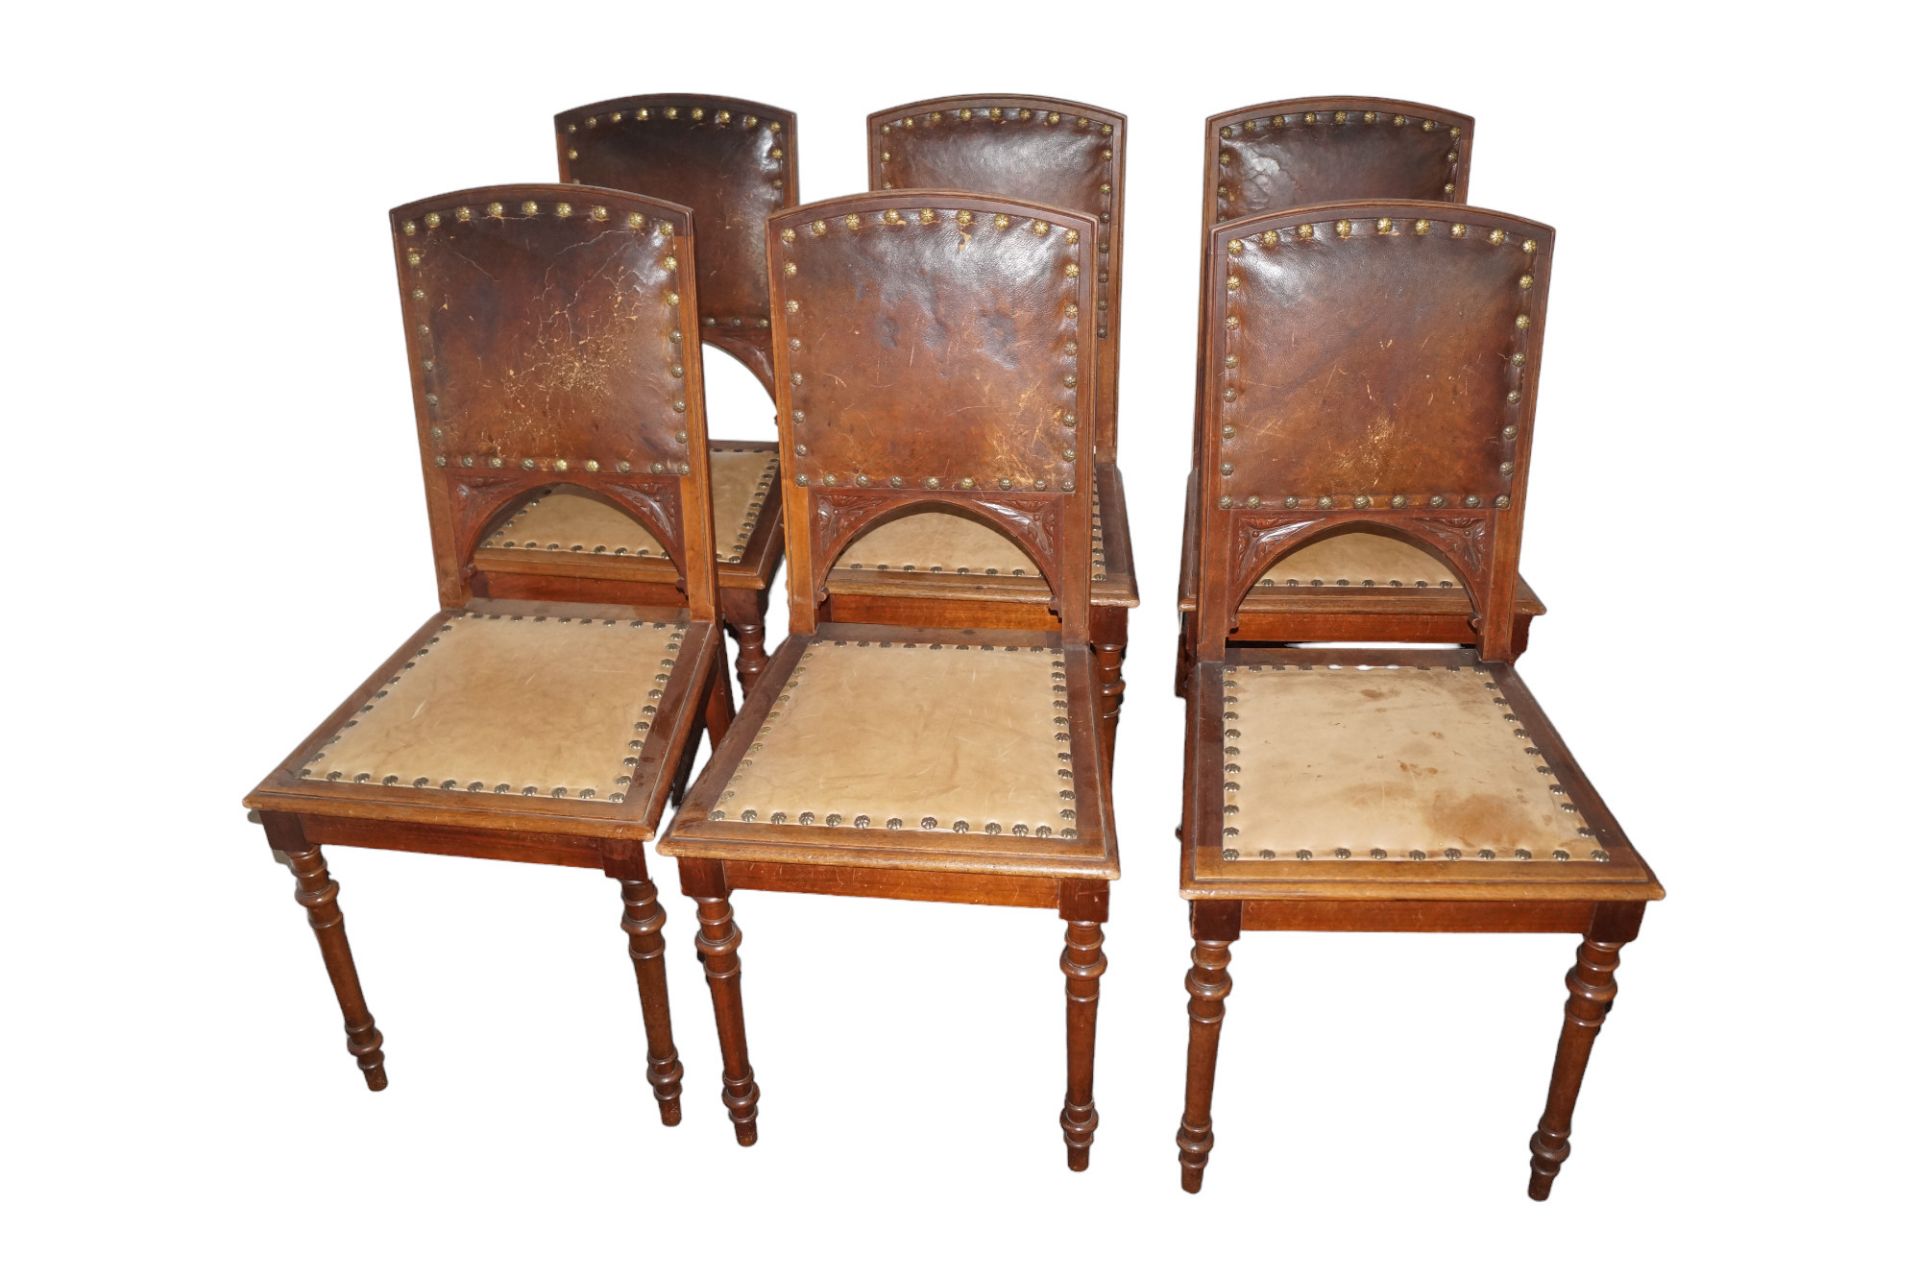 Sechs Stühle aus der Zeit um 1890; Sitz- und Rückenflächen mit Leder bezogen, dieses im Rückenberei